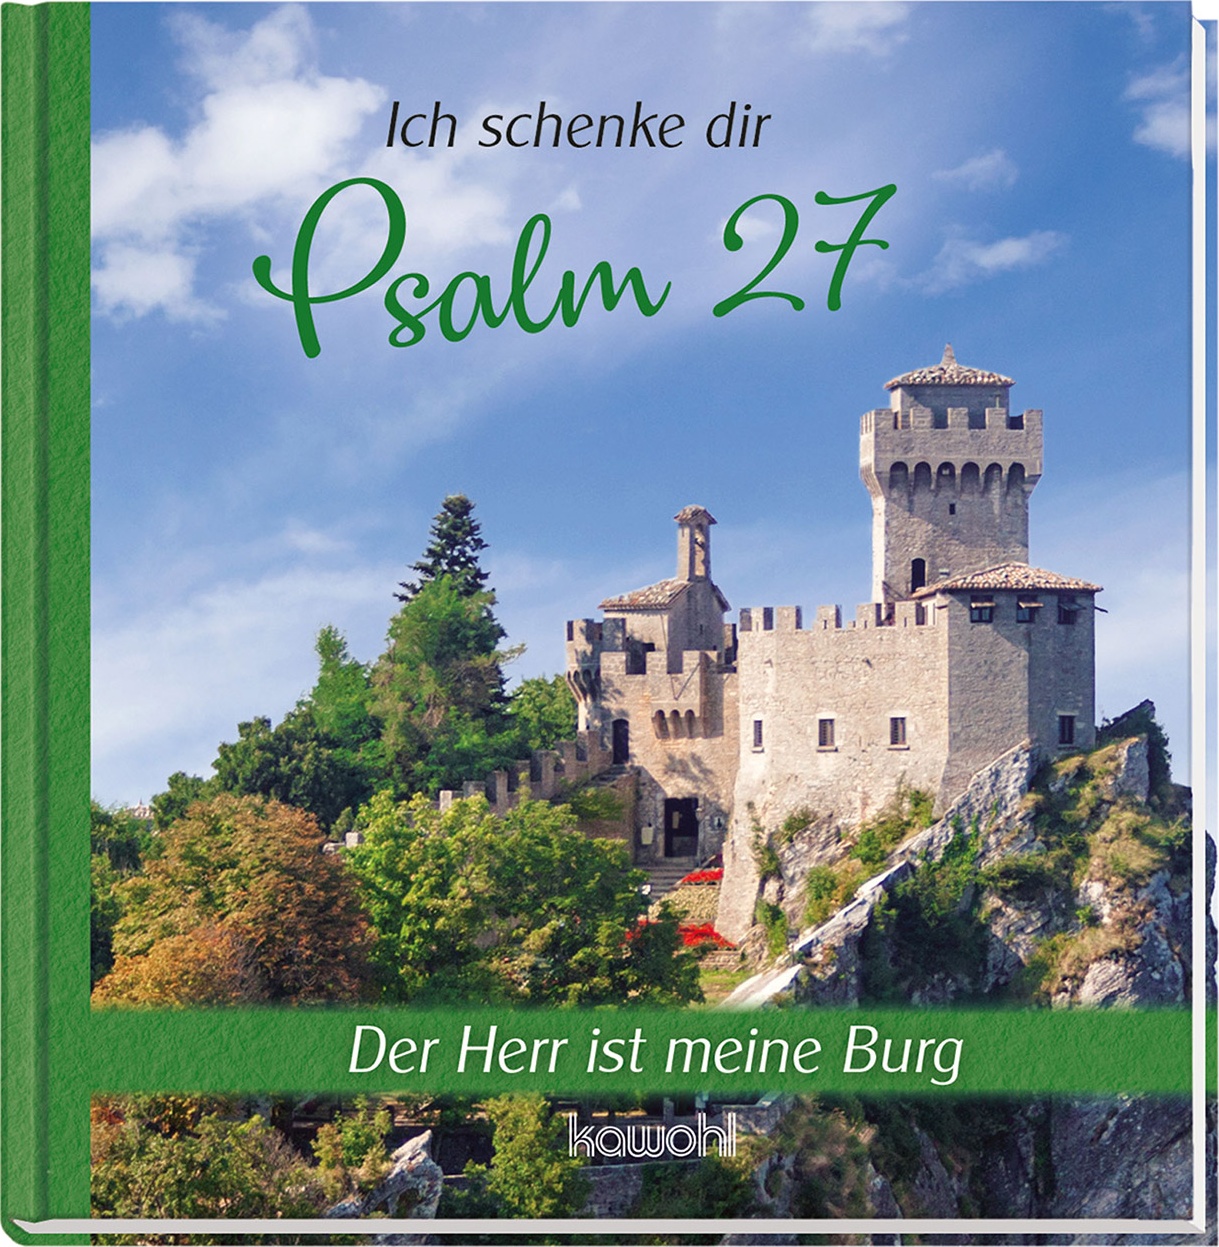 Ich schenke dir Psalm 27 - Der Herr ist meine Burg